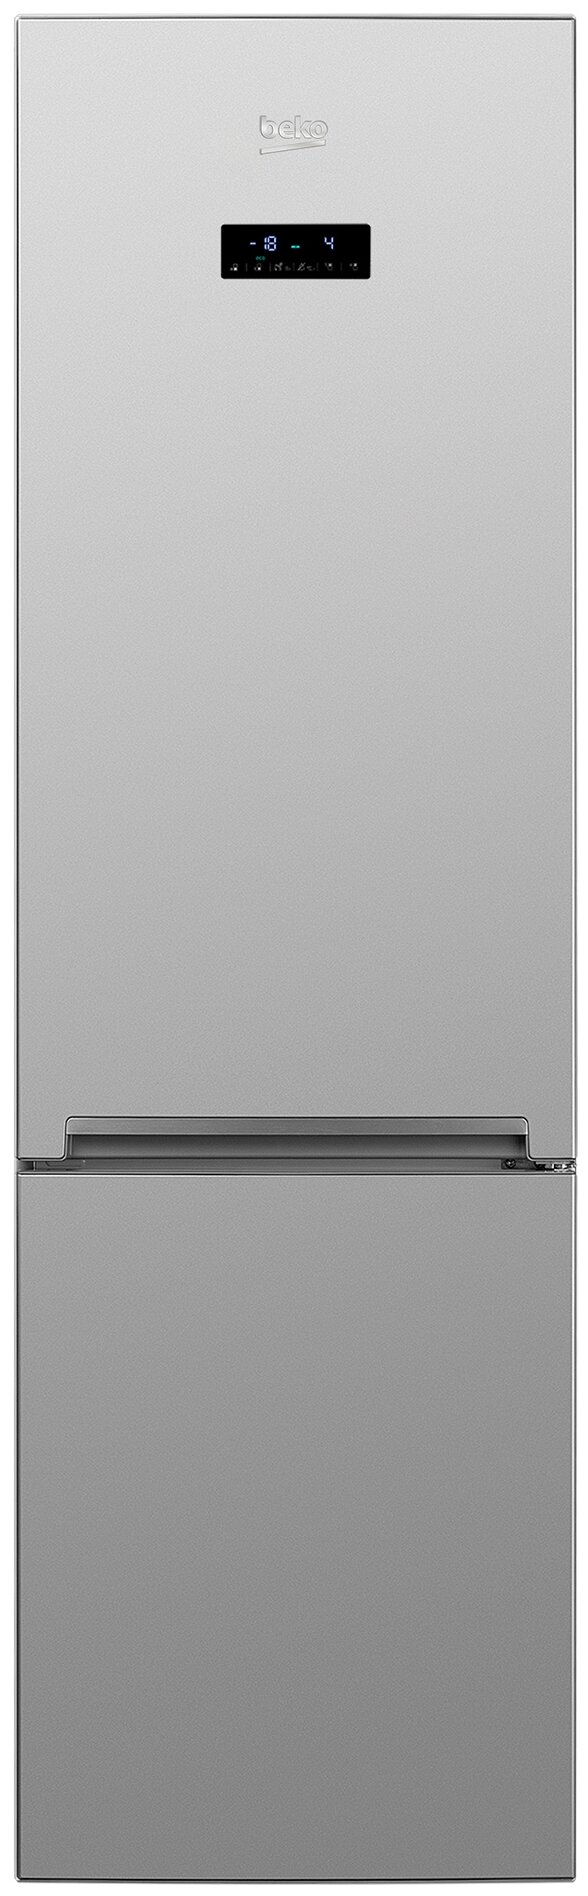 Холодильник Beko двухкамерный серебристый - фото №1